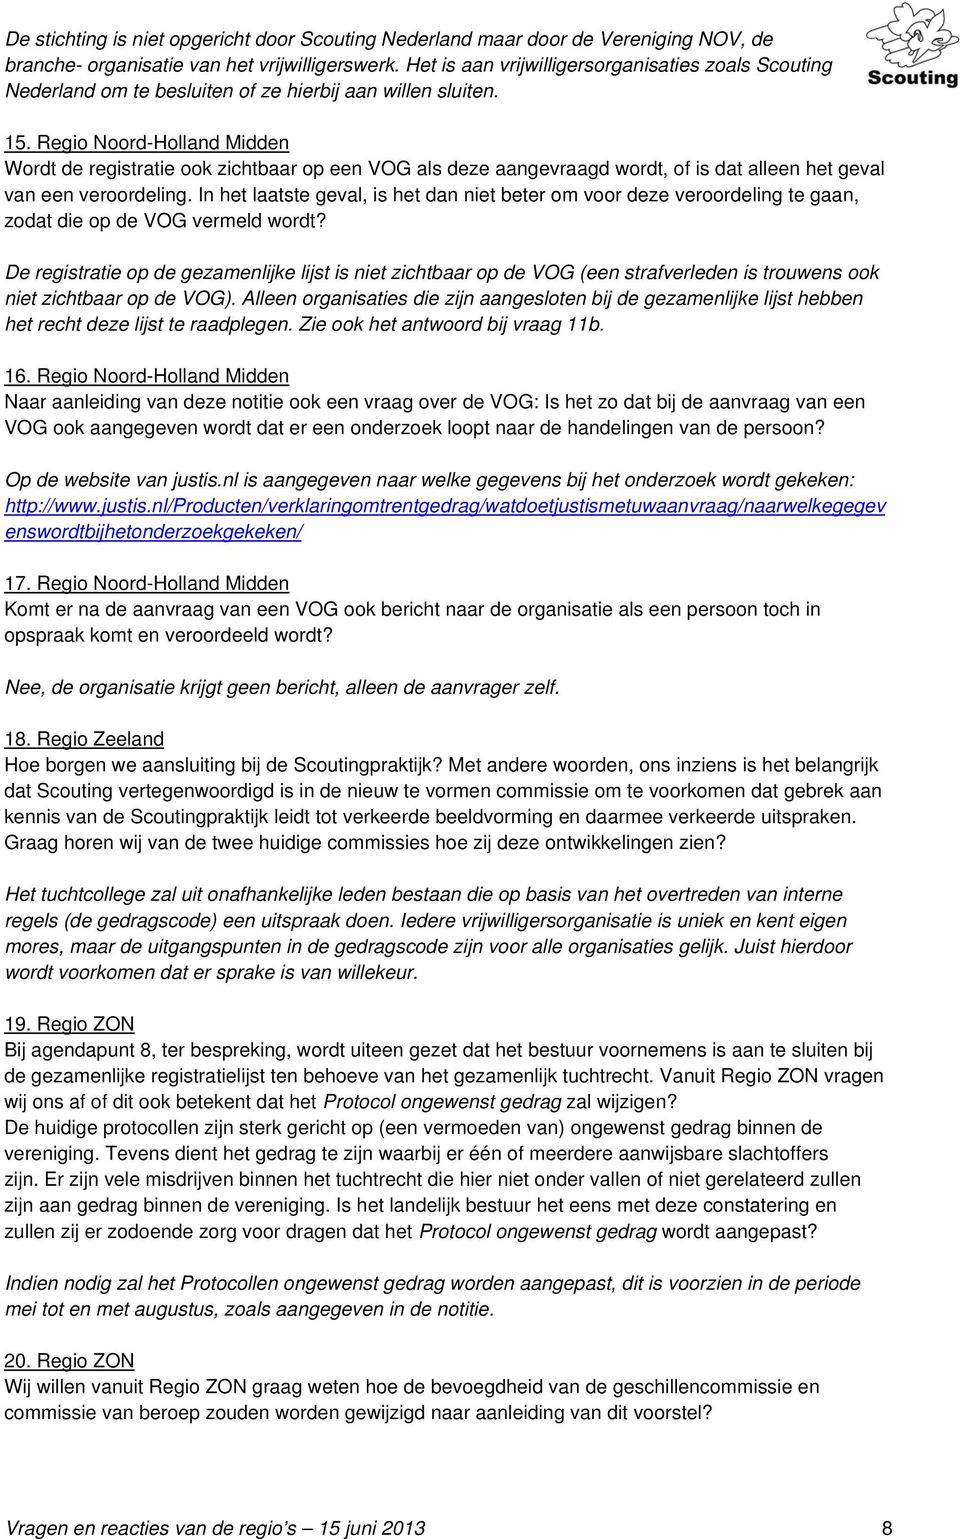 Regio Noord-Holland Midden Wordt de registratie ook zichtbaar op een VOG als deze aangevraagd wordt, of is dat alleen het geval van een veroordeling.